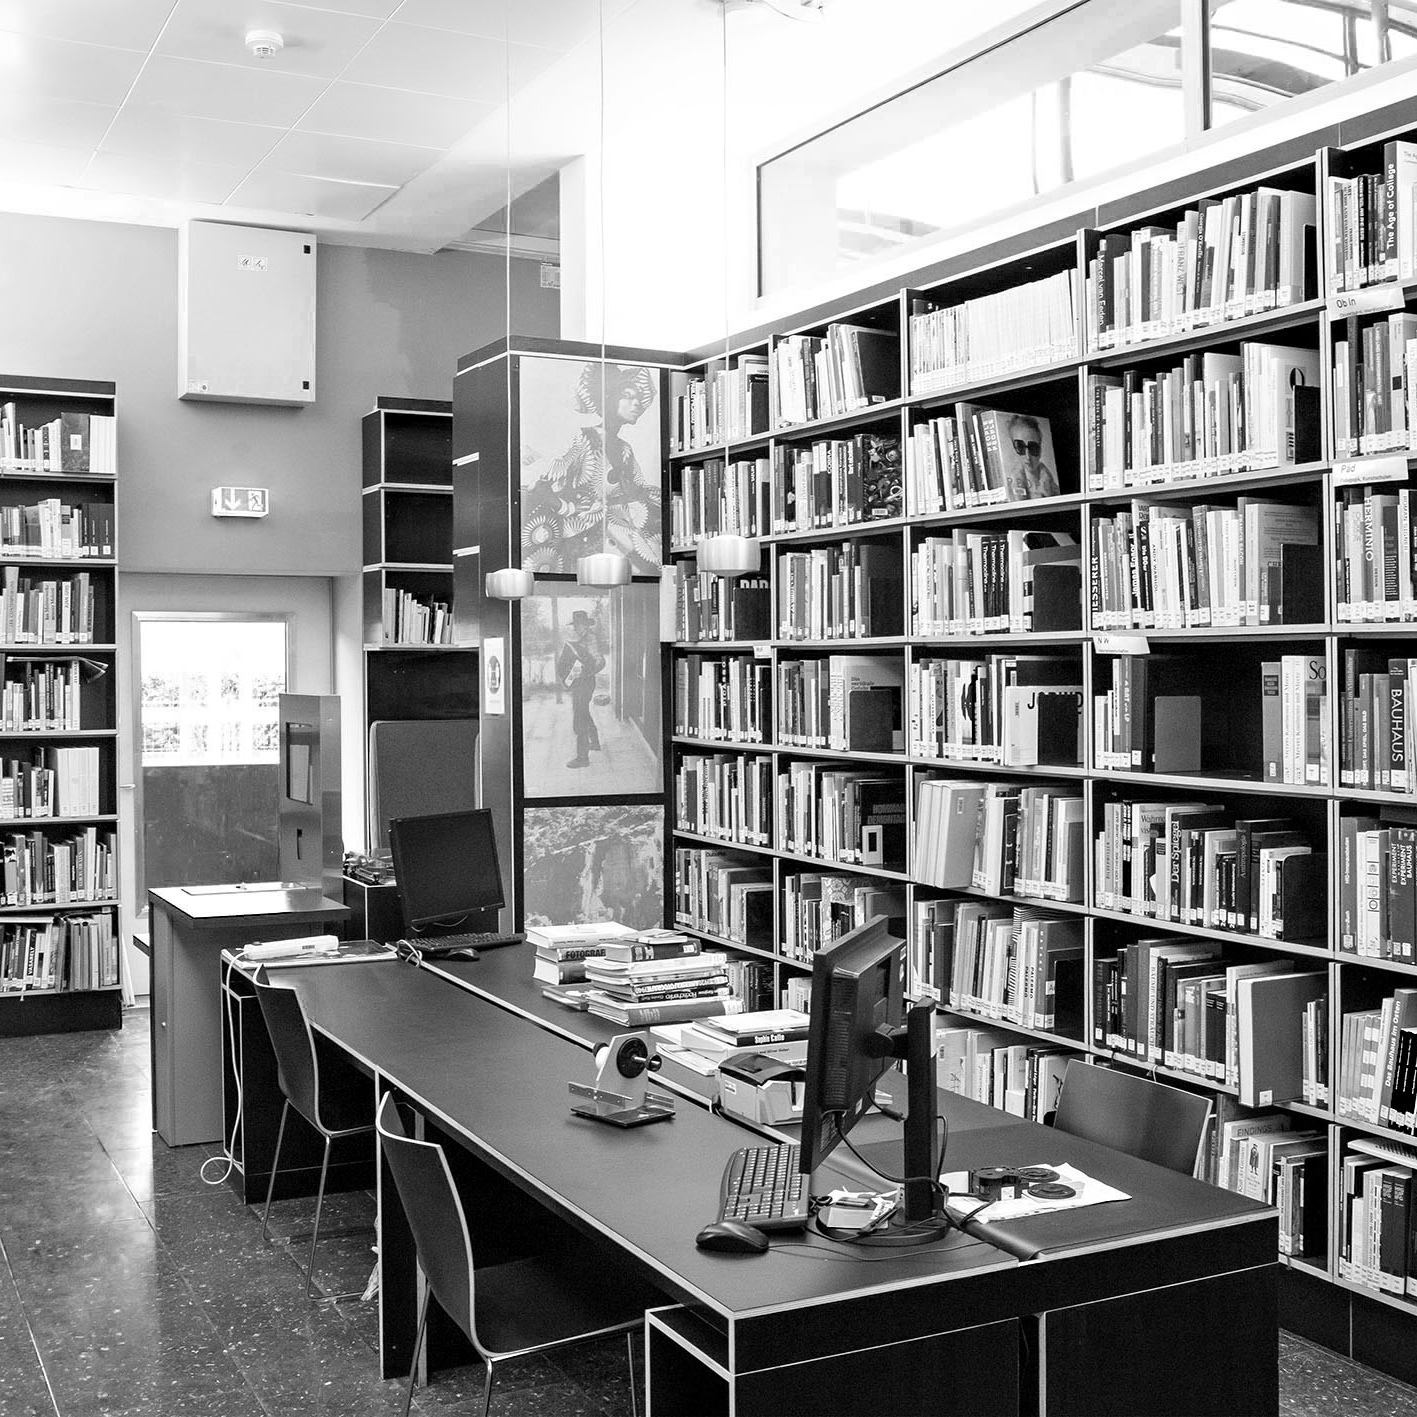 Schwarzweißfoto der Teilbibliothek-Gestaltung von Innen